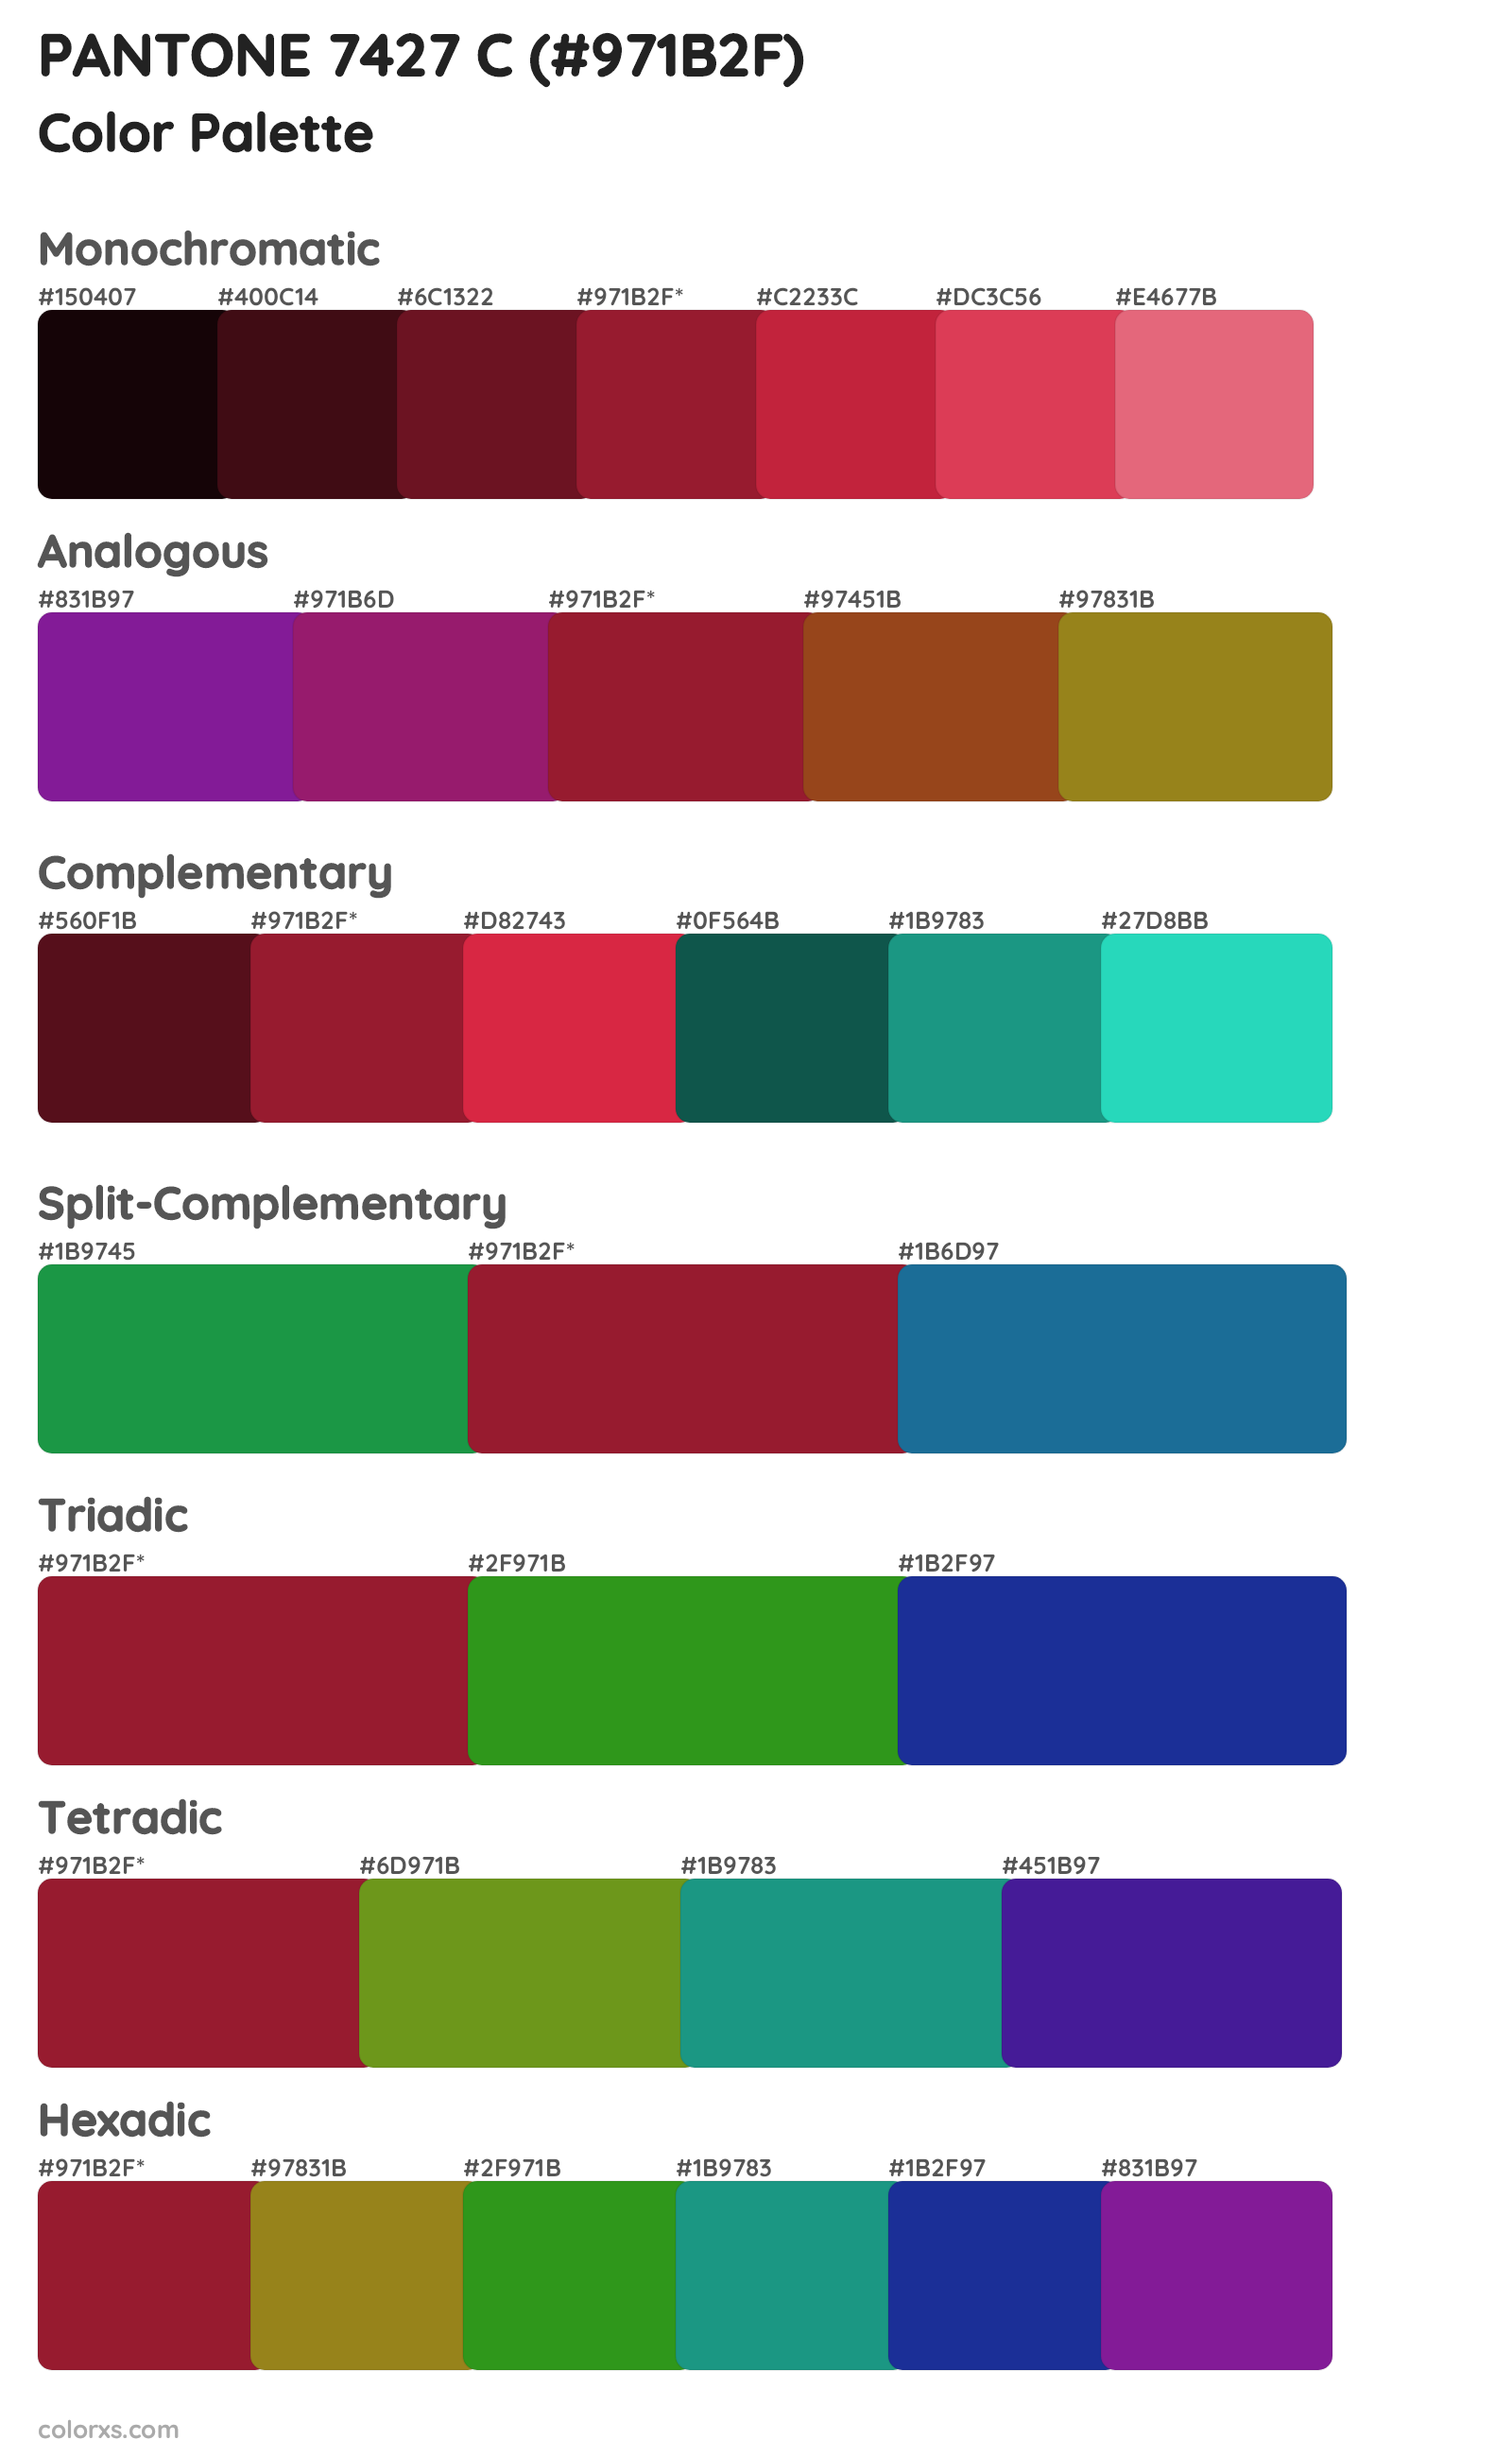 PANTONE 7427 C Color Scheme Palettes